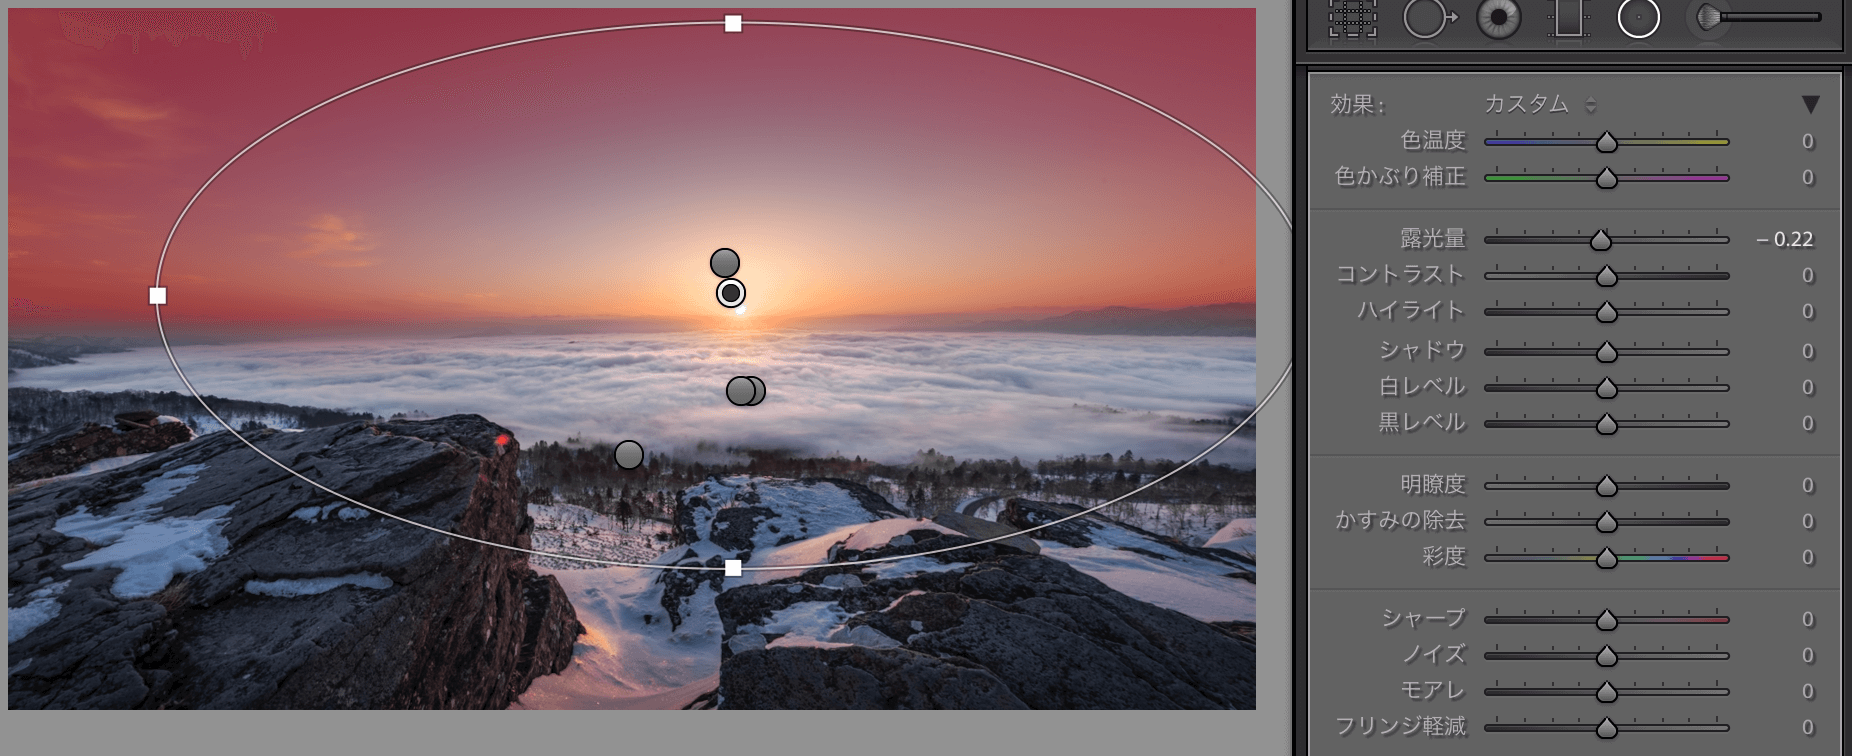 雲海と朝日を現像してみよう 優しい光に包まれた真冬の雲海を現像する 一眼レフカメラ 写真初心者のカメラブログ